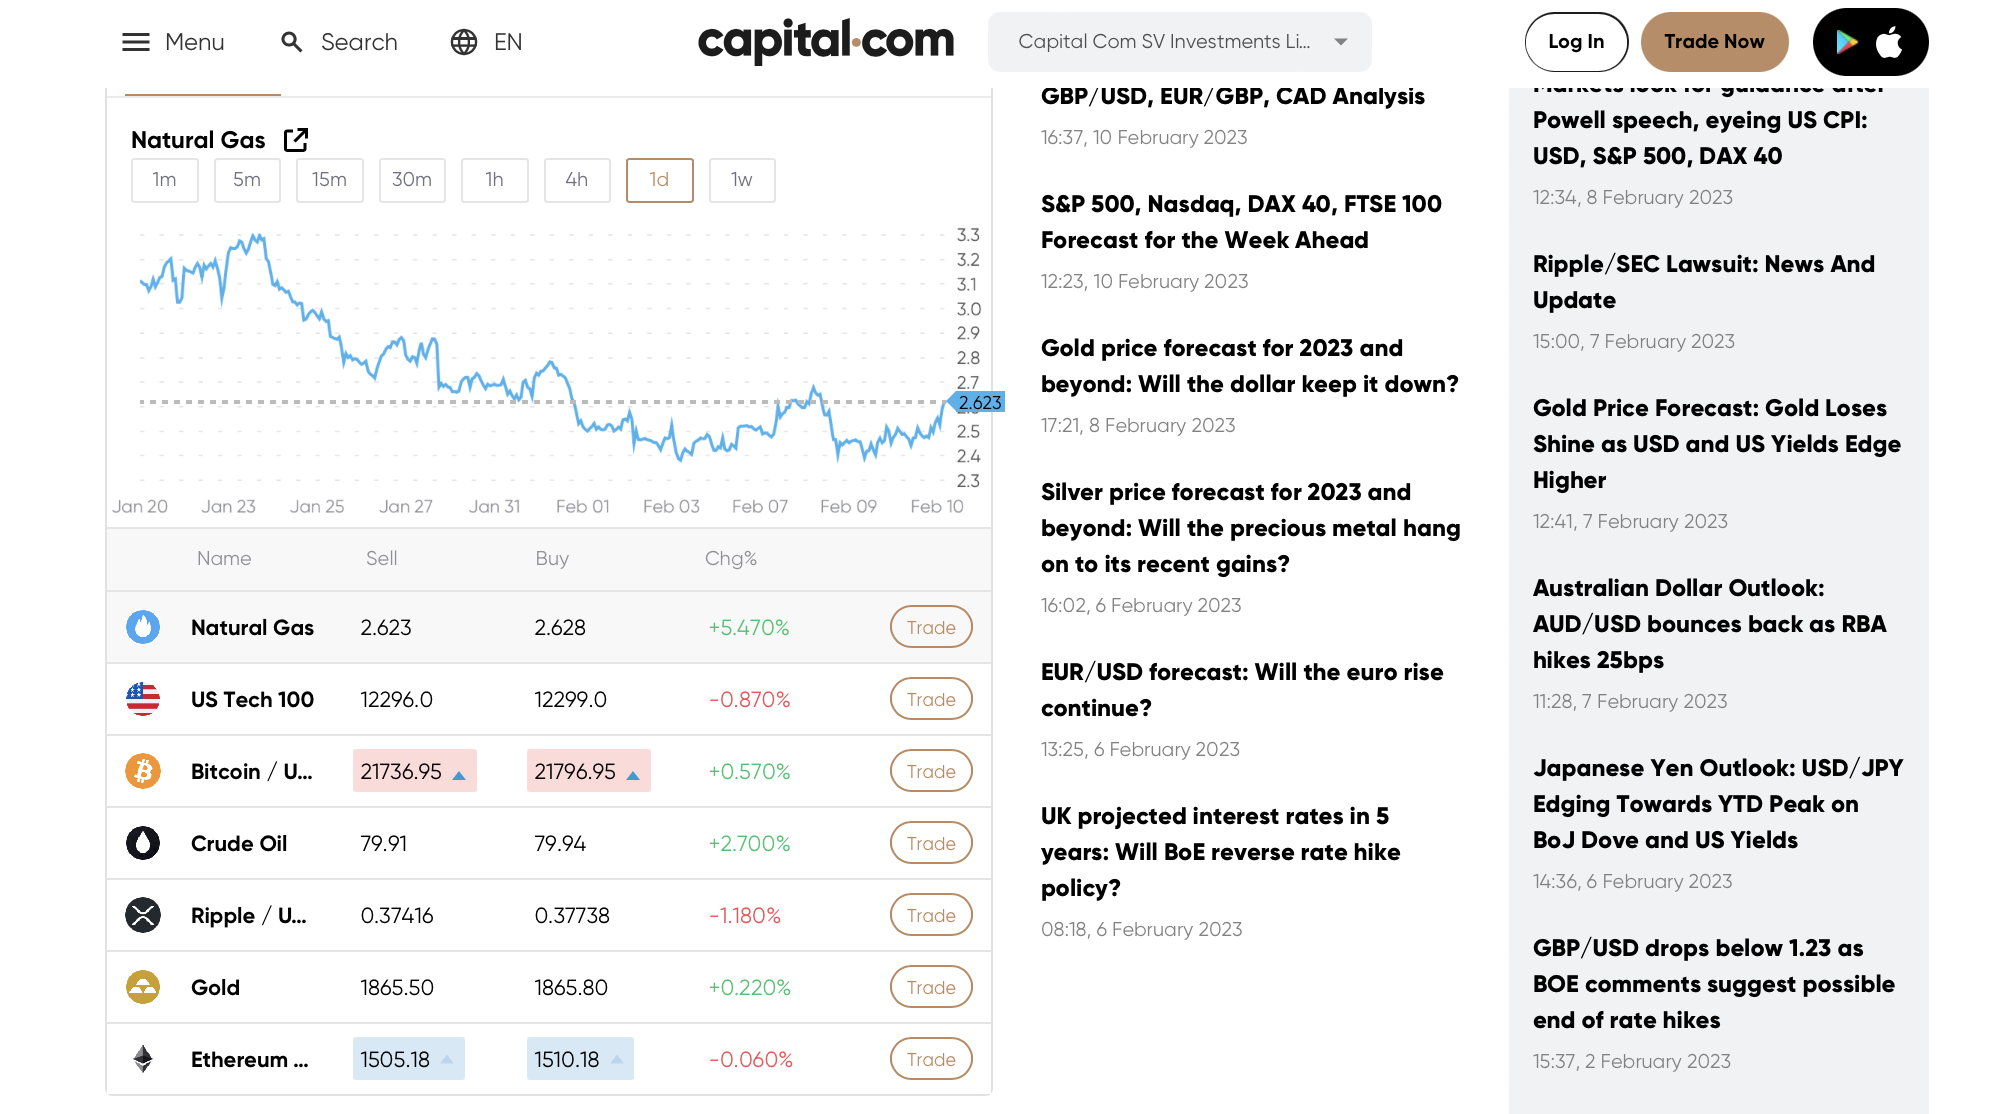 Den officielle hjemmeside for Capital.com